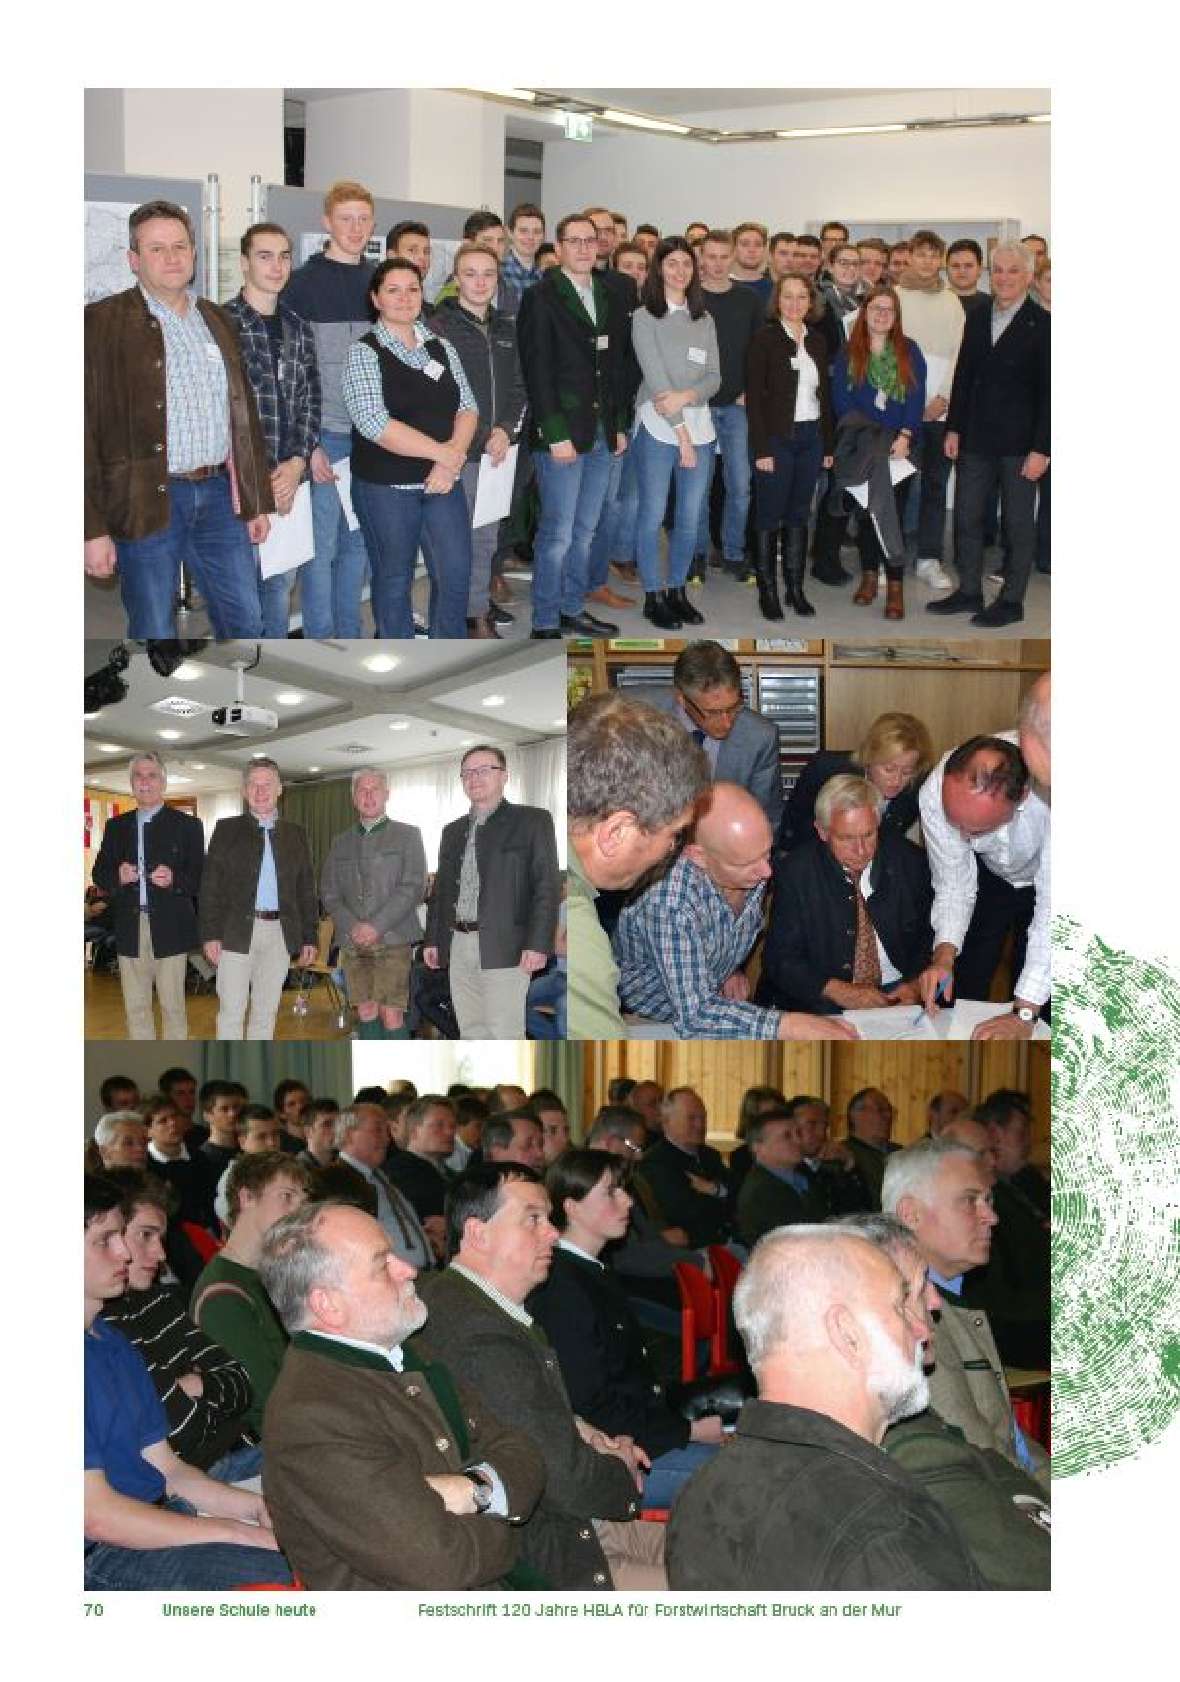 Einige Bilder von wichtigen Vertretern der Forstwirtschaft